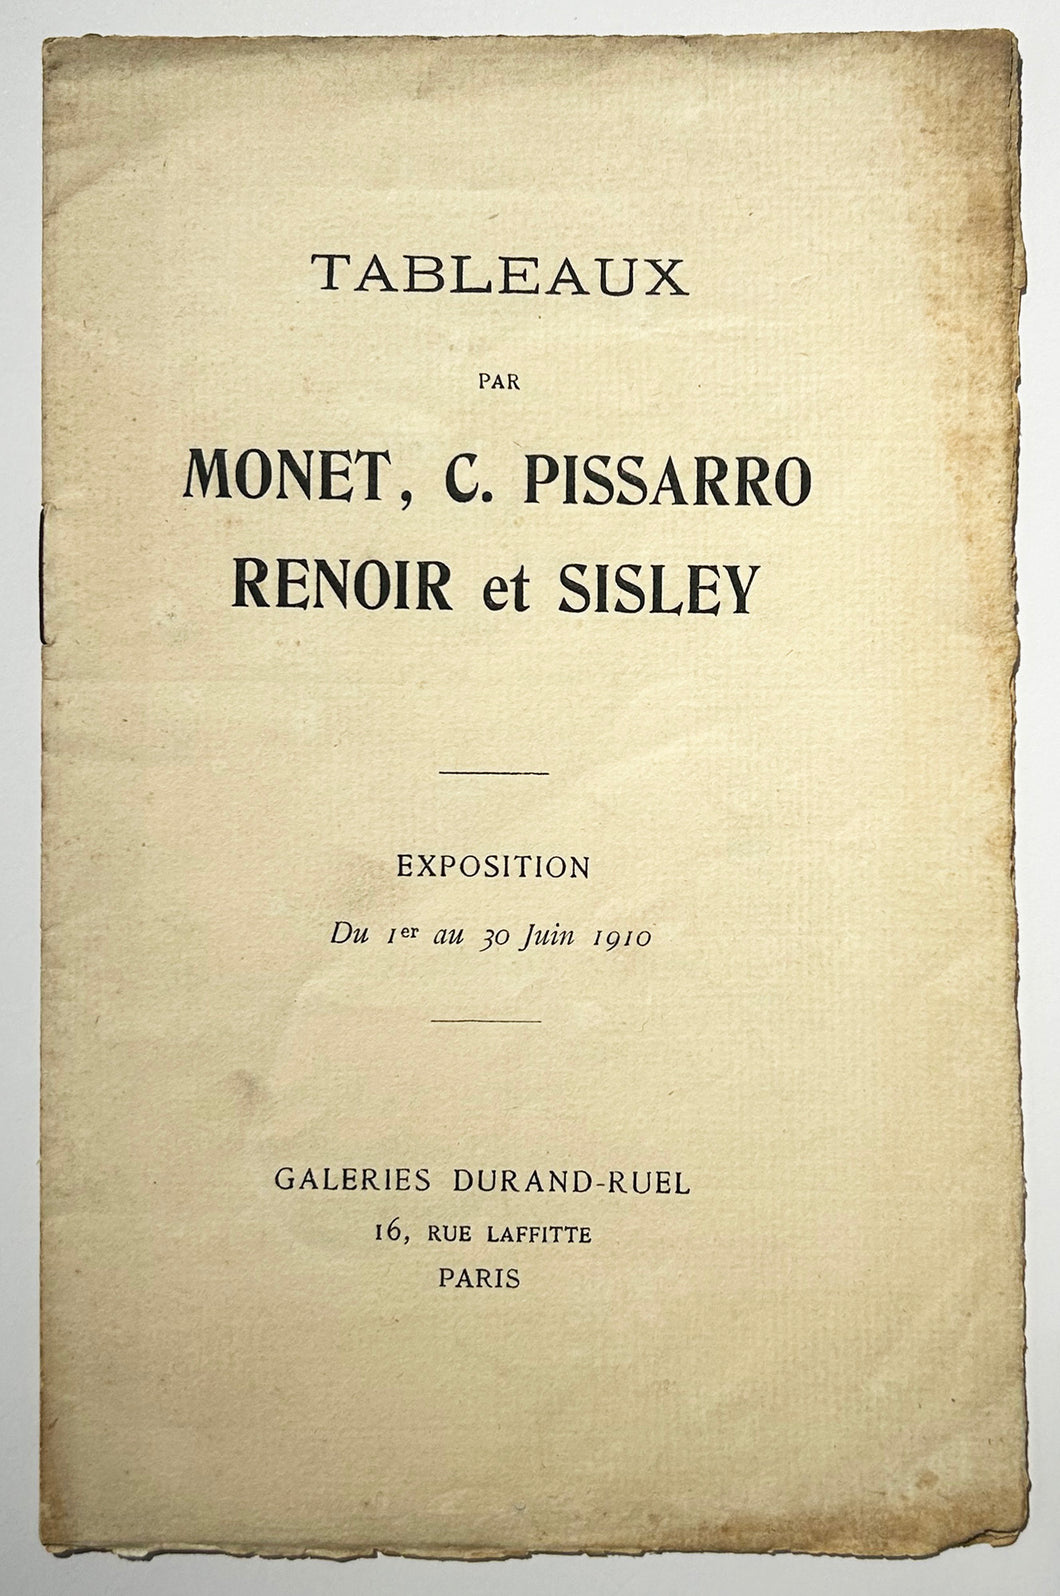 Catalogue de l'Exposition de Tableaux par Monet, C. Pissarro, Renoir et Sisley, du 1er au 30 juin 1910 à la Galerie Durand-Ruel, 16 rue Laffitte à Paris.